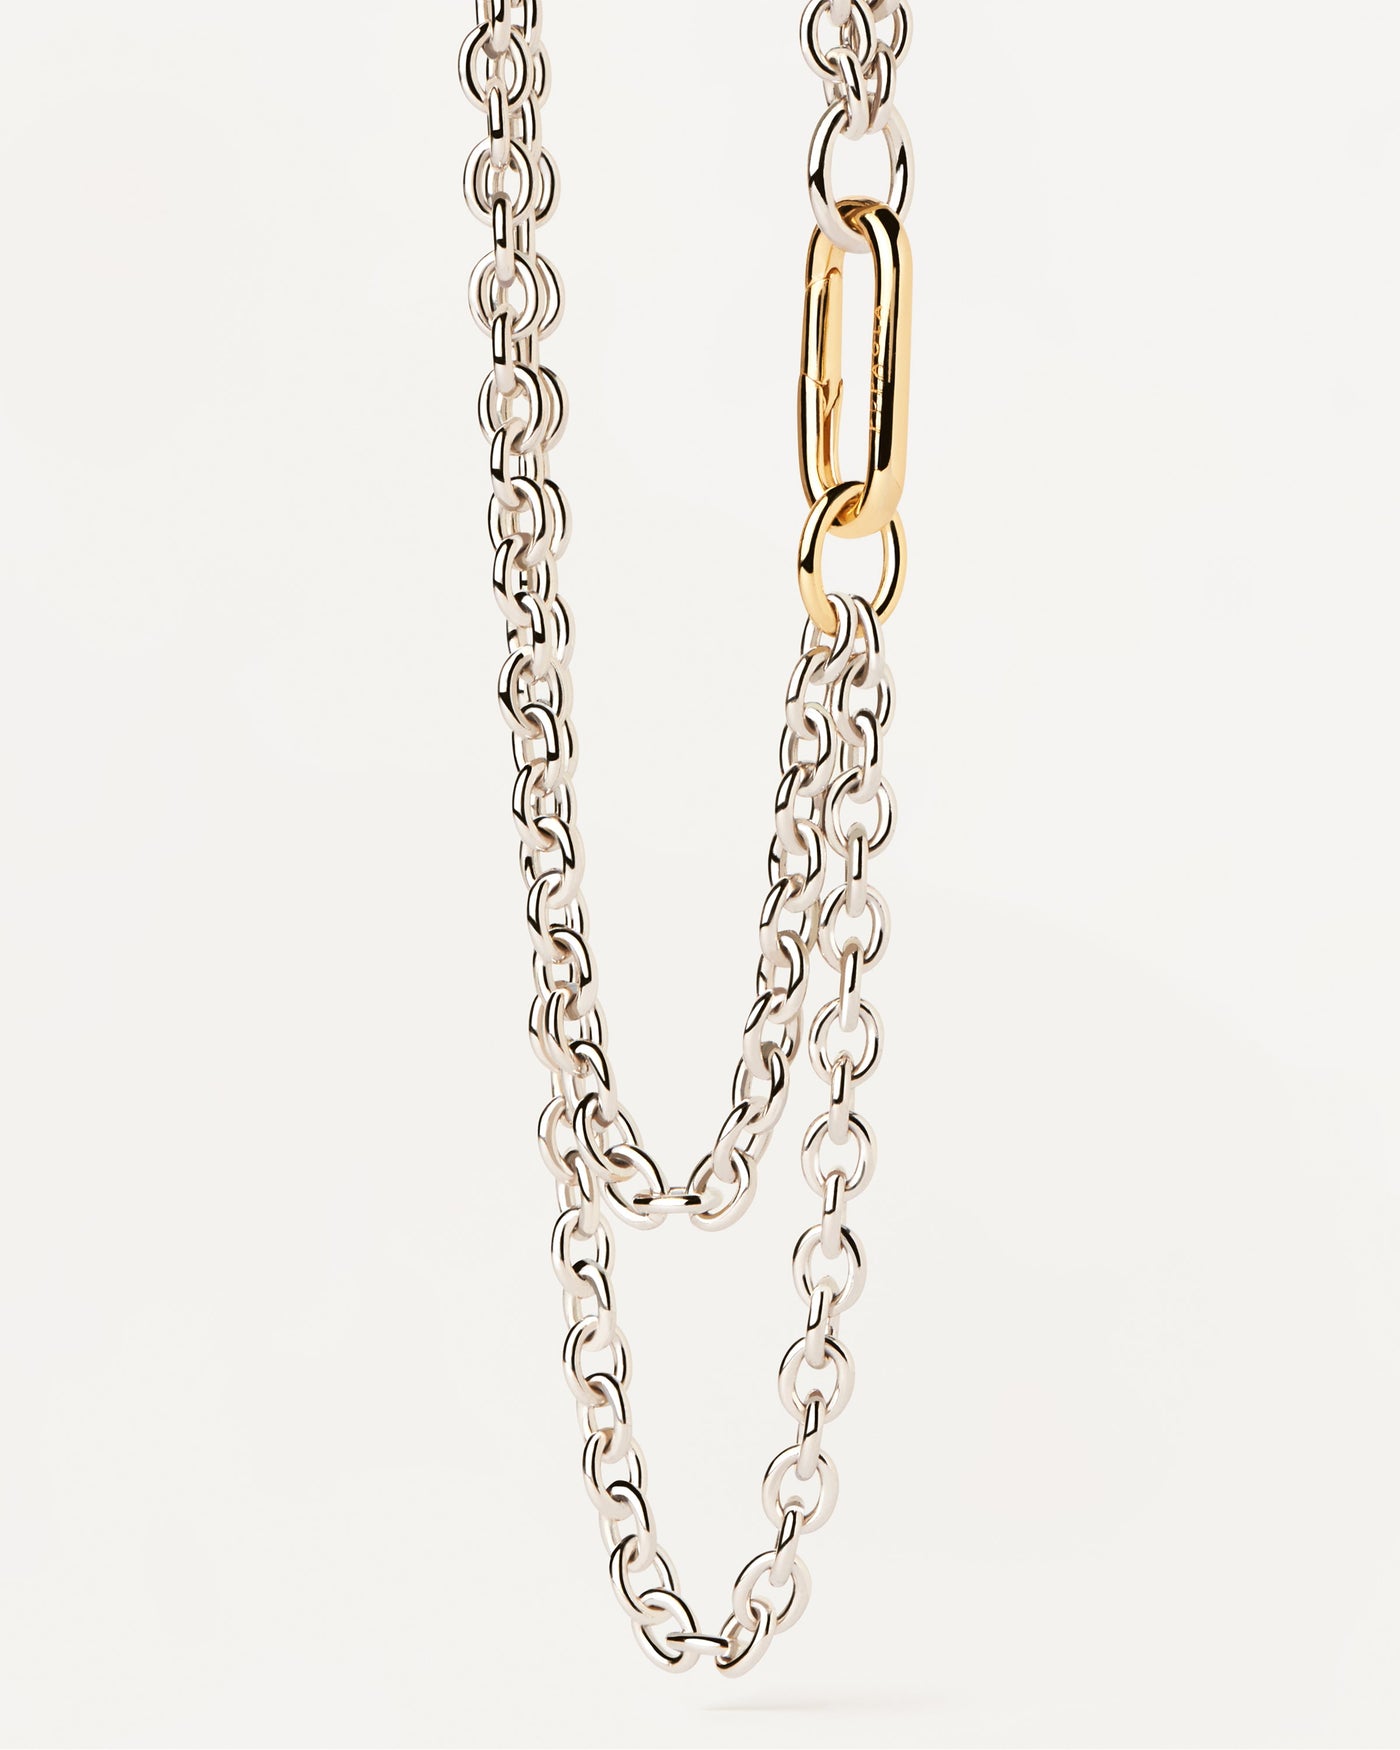 Double Beat Gliederkette. Doppelte Bicolor-Halskette mit silbernen Gliedern und auffälligem vergoldetem Verschluss. Erhalten Sie die neuesten Produkte von PDPAOLA. Geben Sie Ihre Bestellung sicher auf und erhalten Sie diesen Bestseller.